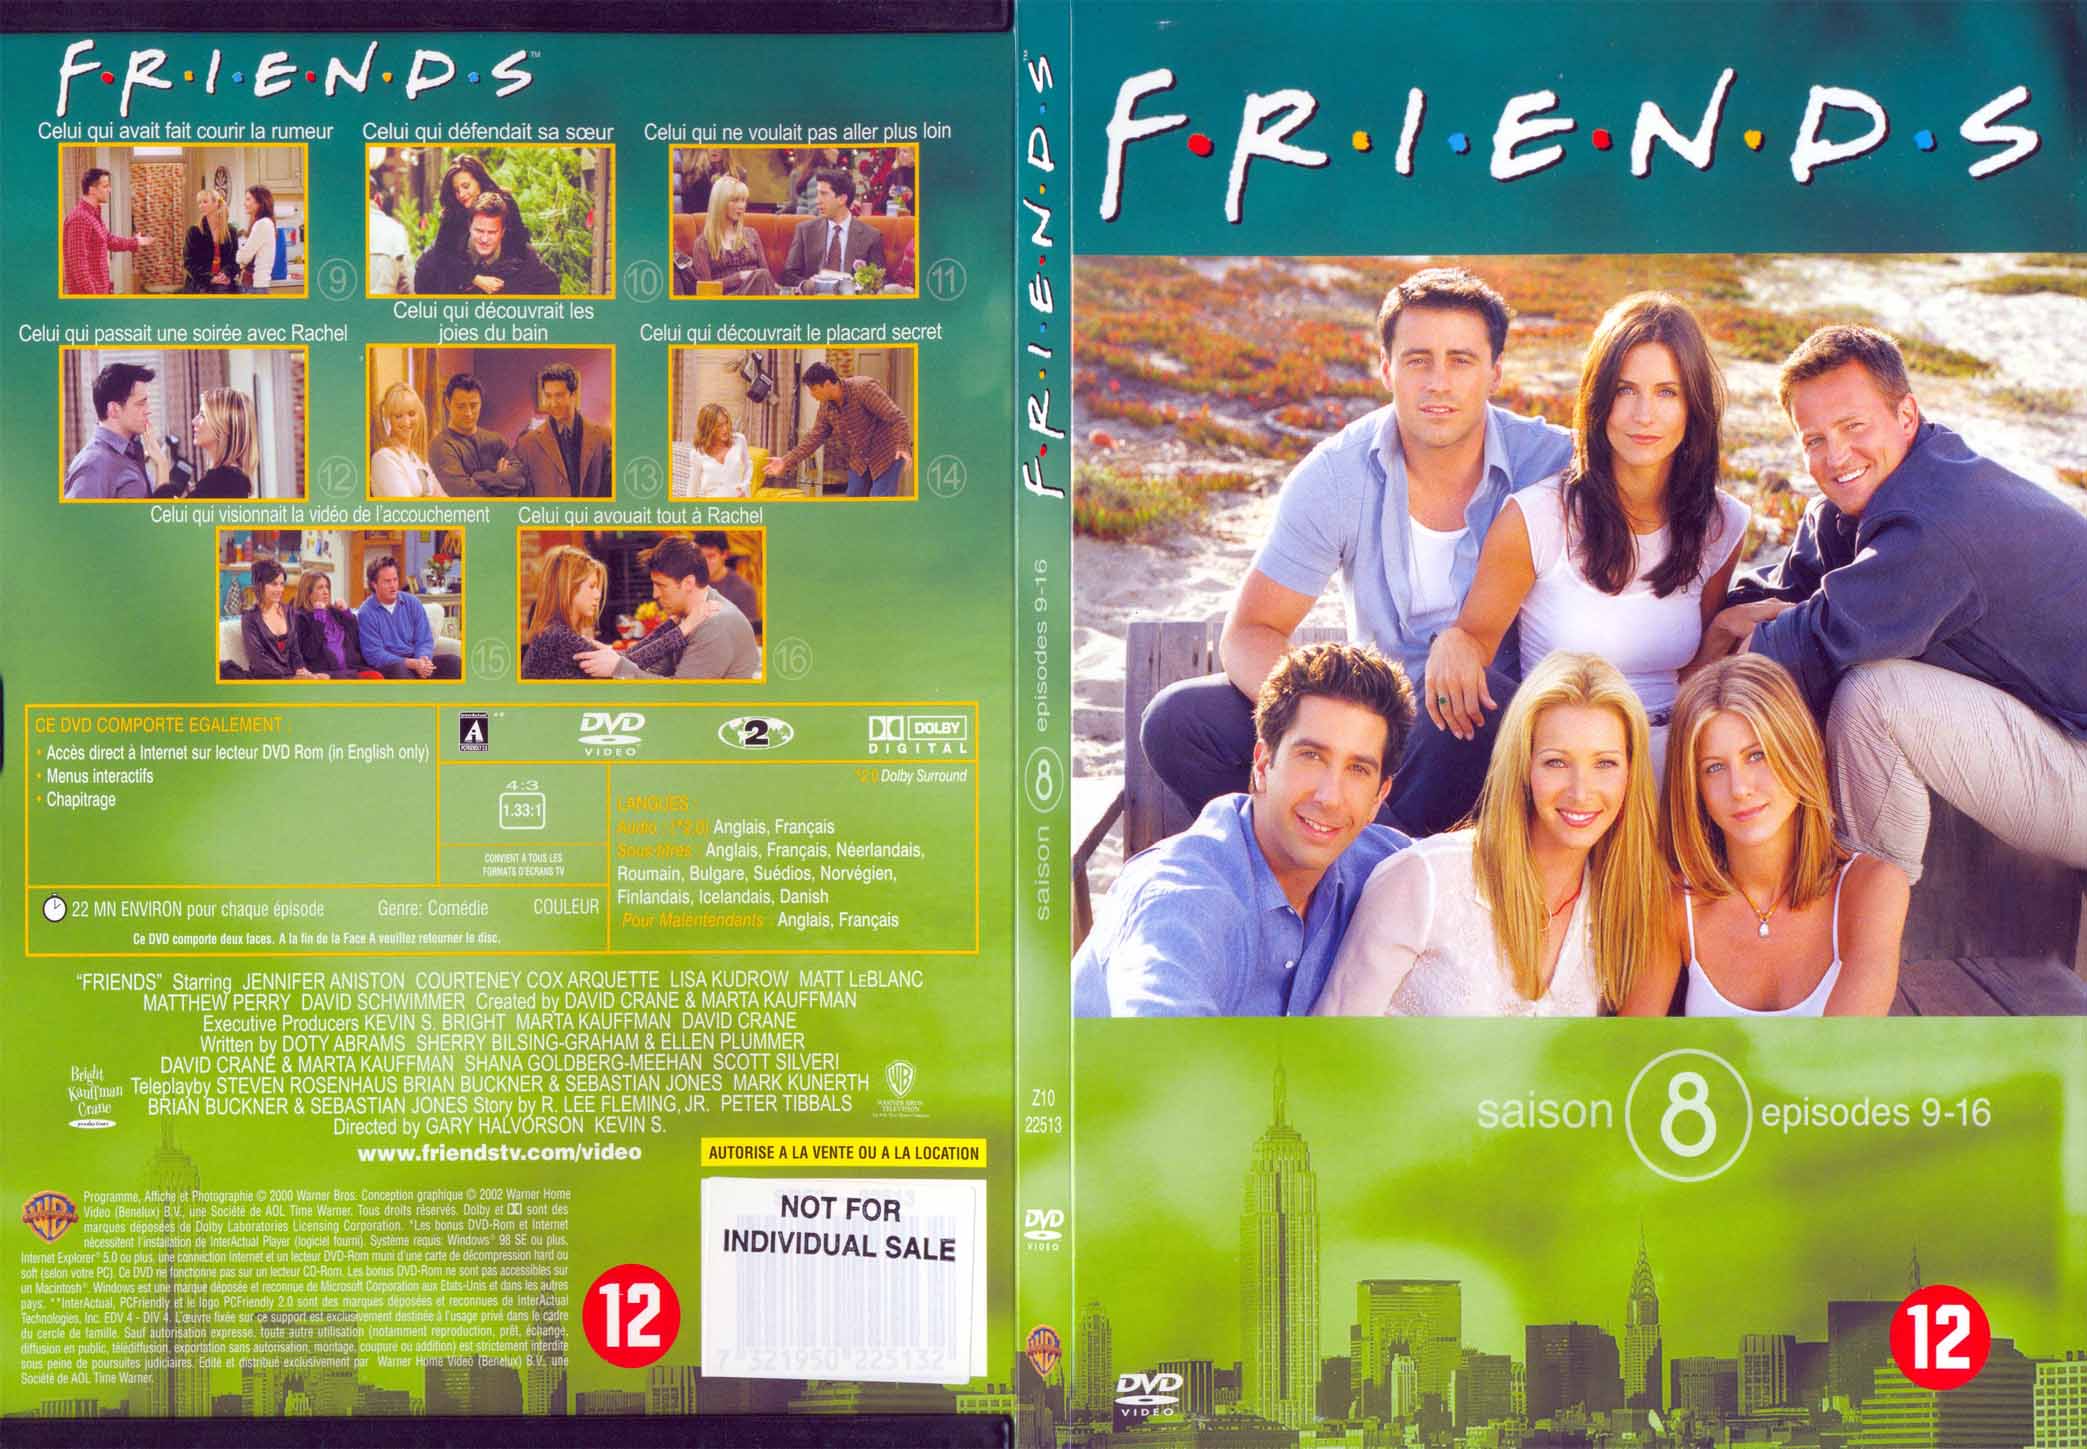 Jaquette DVD Friends saison 8 dvd 2 - SLIM